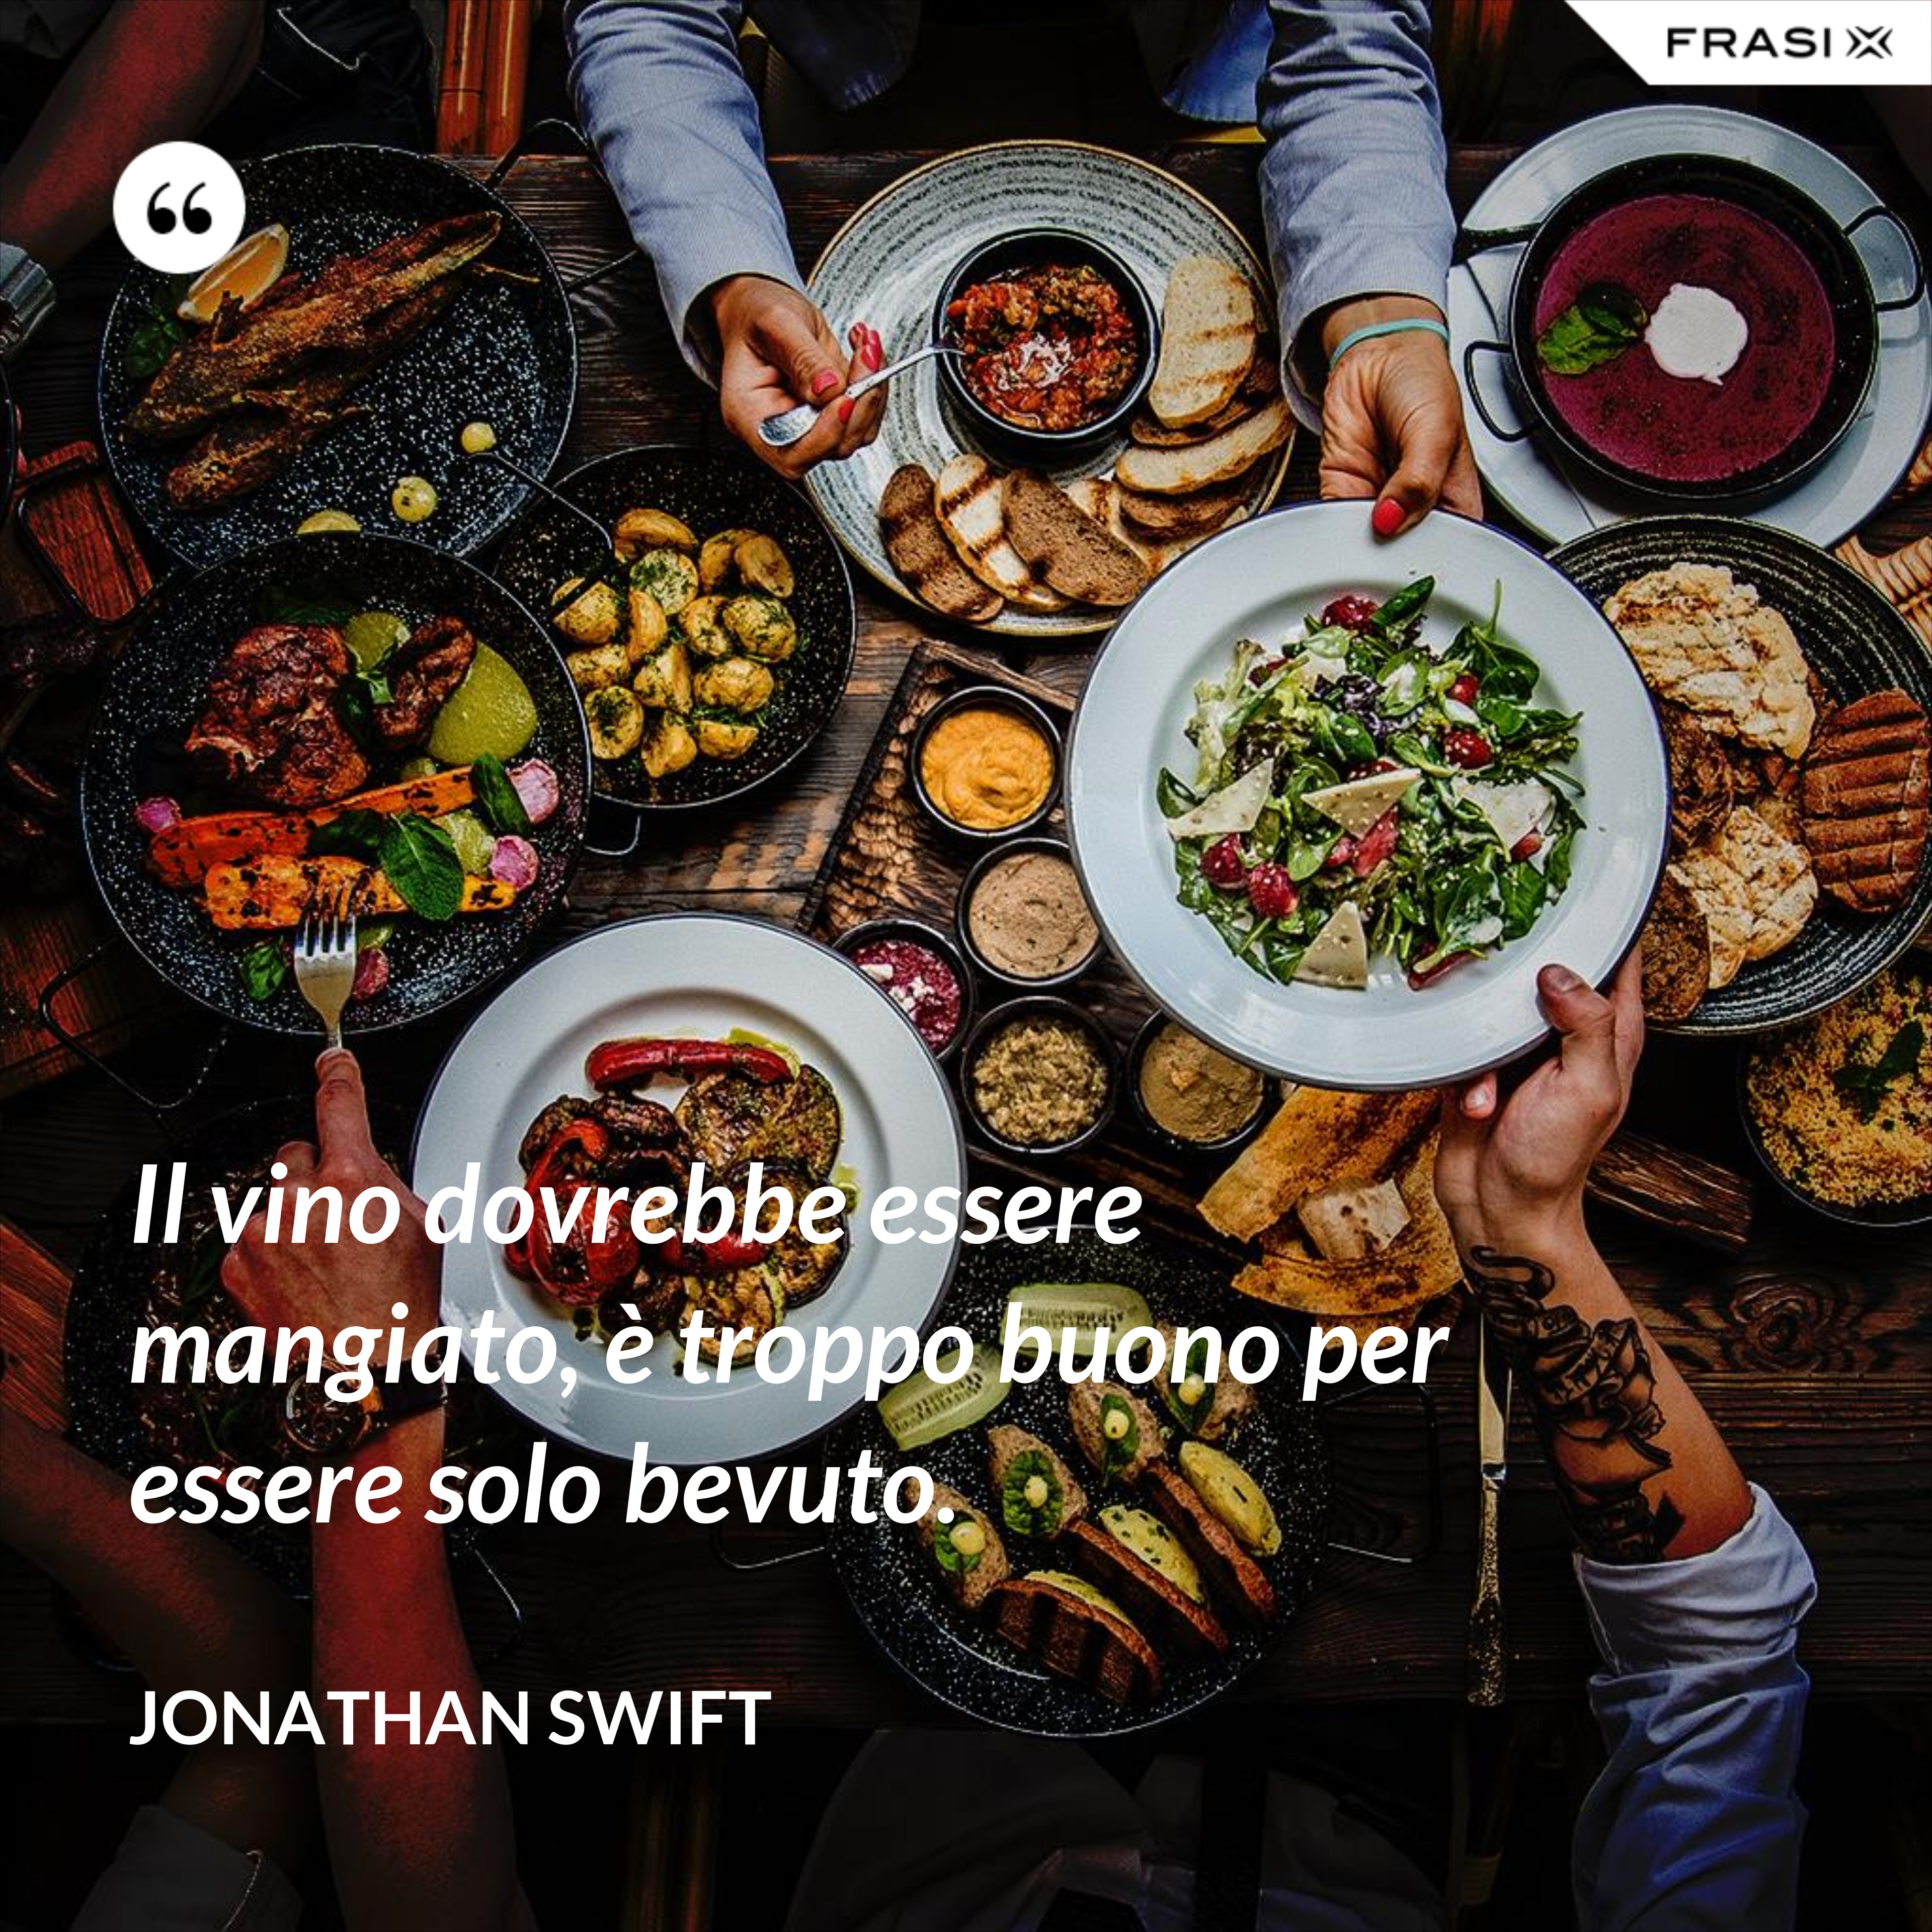 Il vino dovrebbe essere mangiato, è troppo buono per essere solo bevuto. - Jonathan Swift